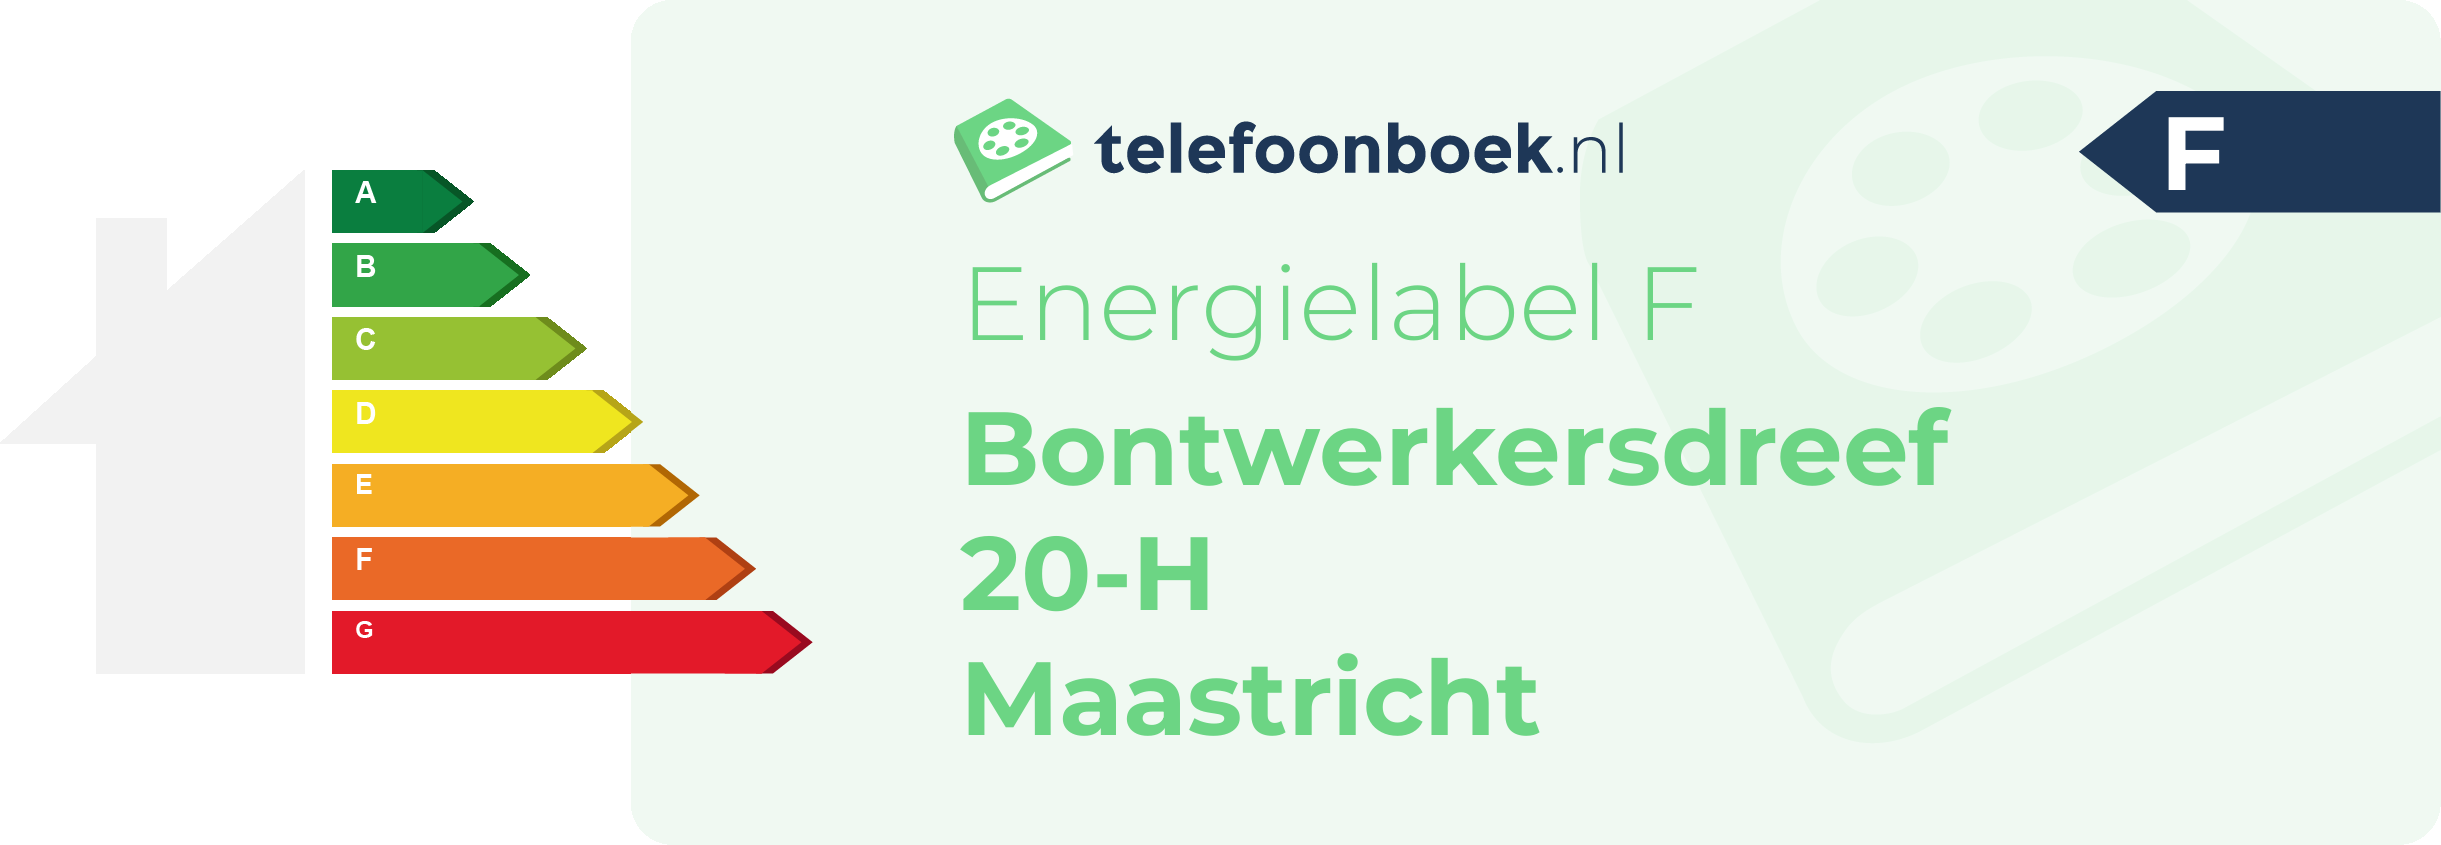 Energielabel Bontwerkersdreef 20-H Maastricht